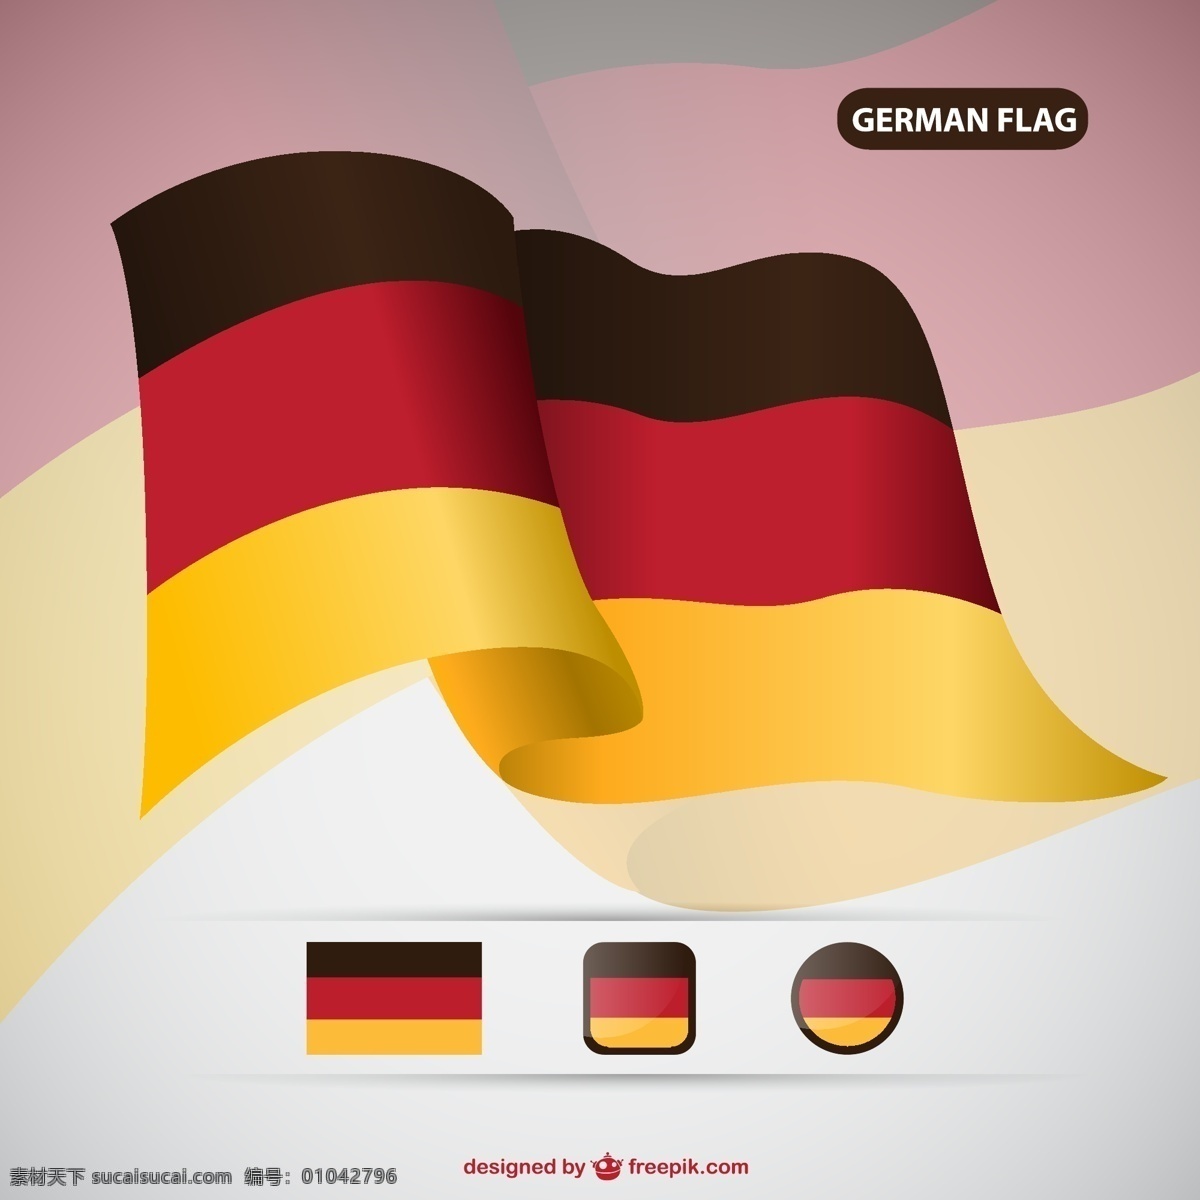 德国 国旗 矢量国旗 德国国旗 矢量德国 german 矢量图片 矢量素材 其他矢量 矢量